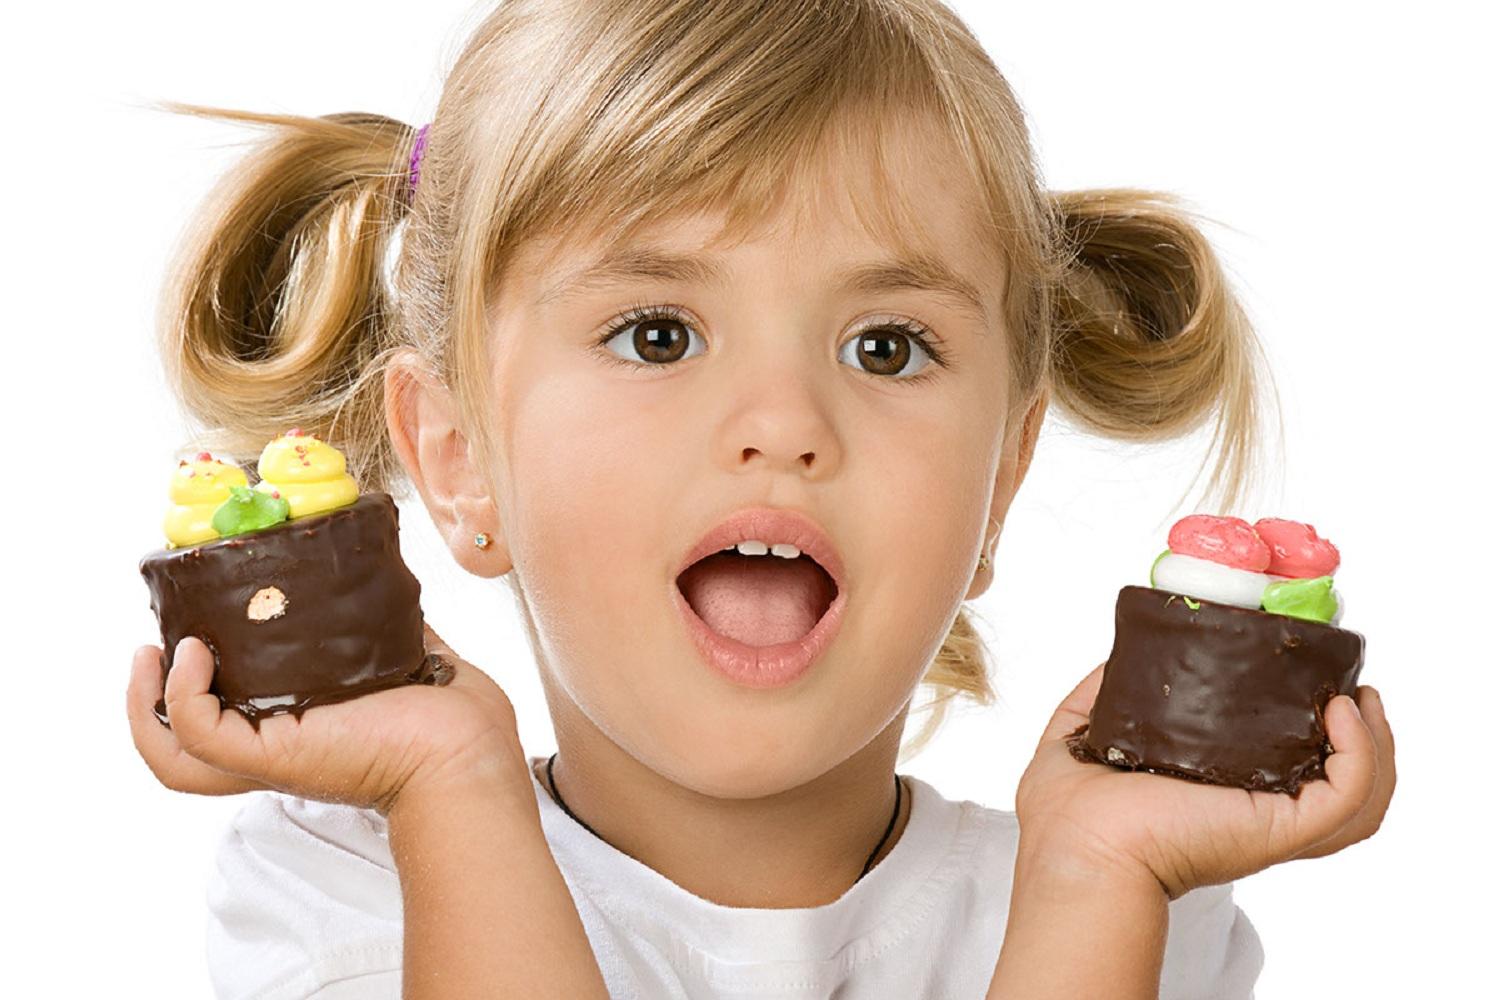 Сладкое не делает детей гиперактивными, говорят эксперты